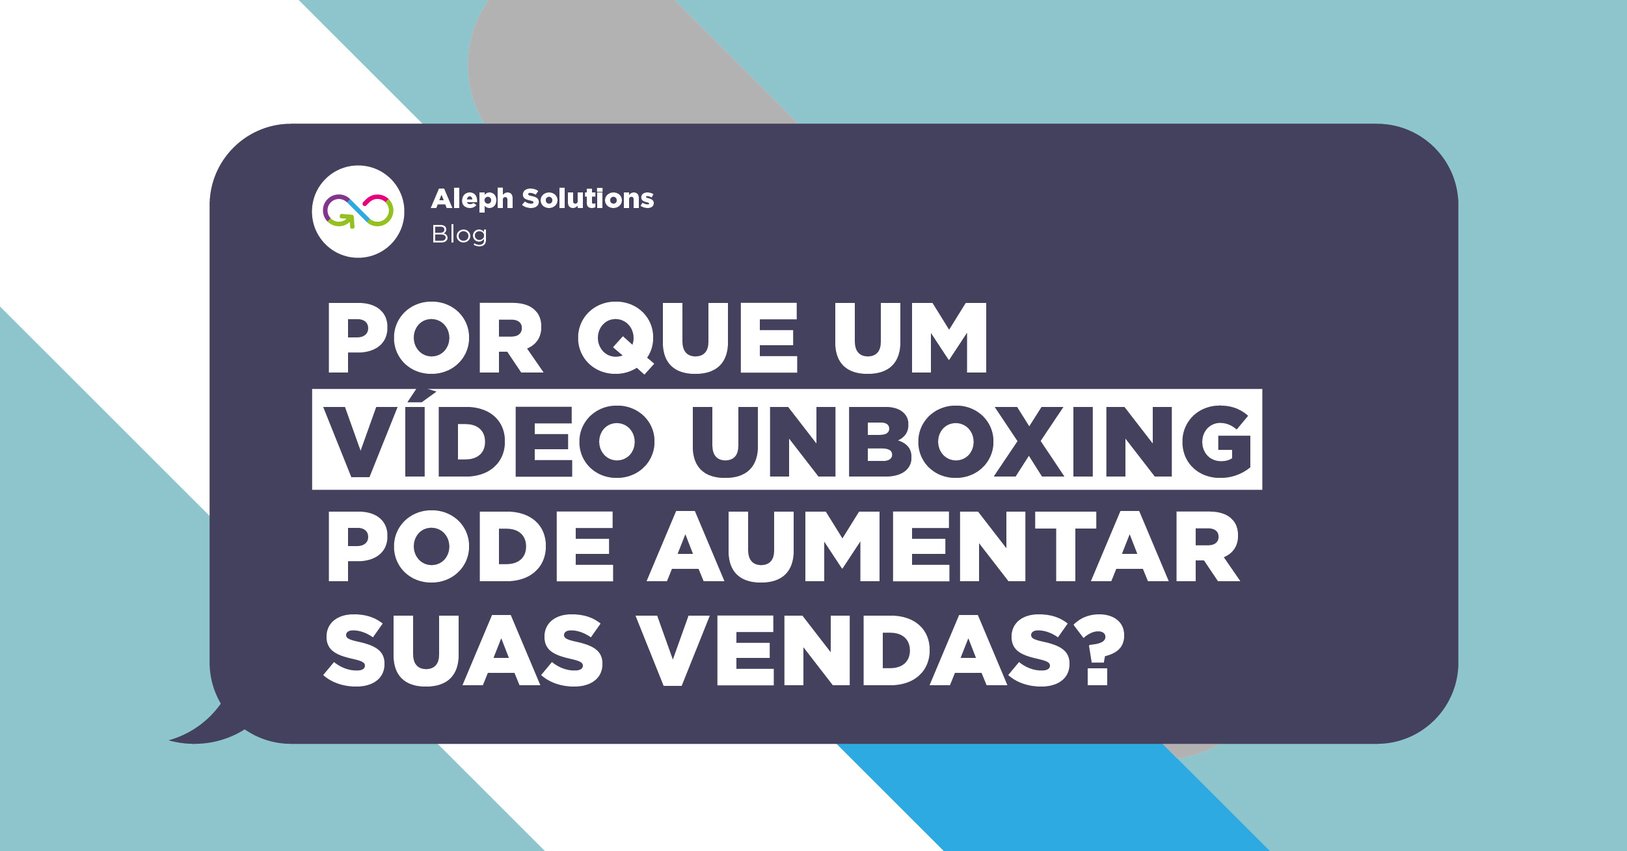 Por que um vídeo de unboxing pode aumentar suas vendas?